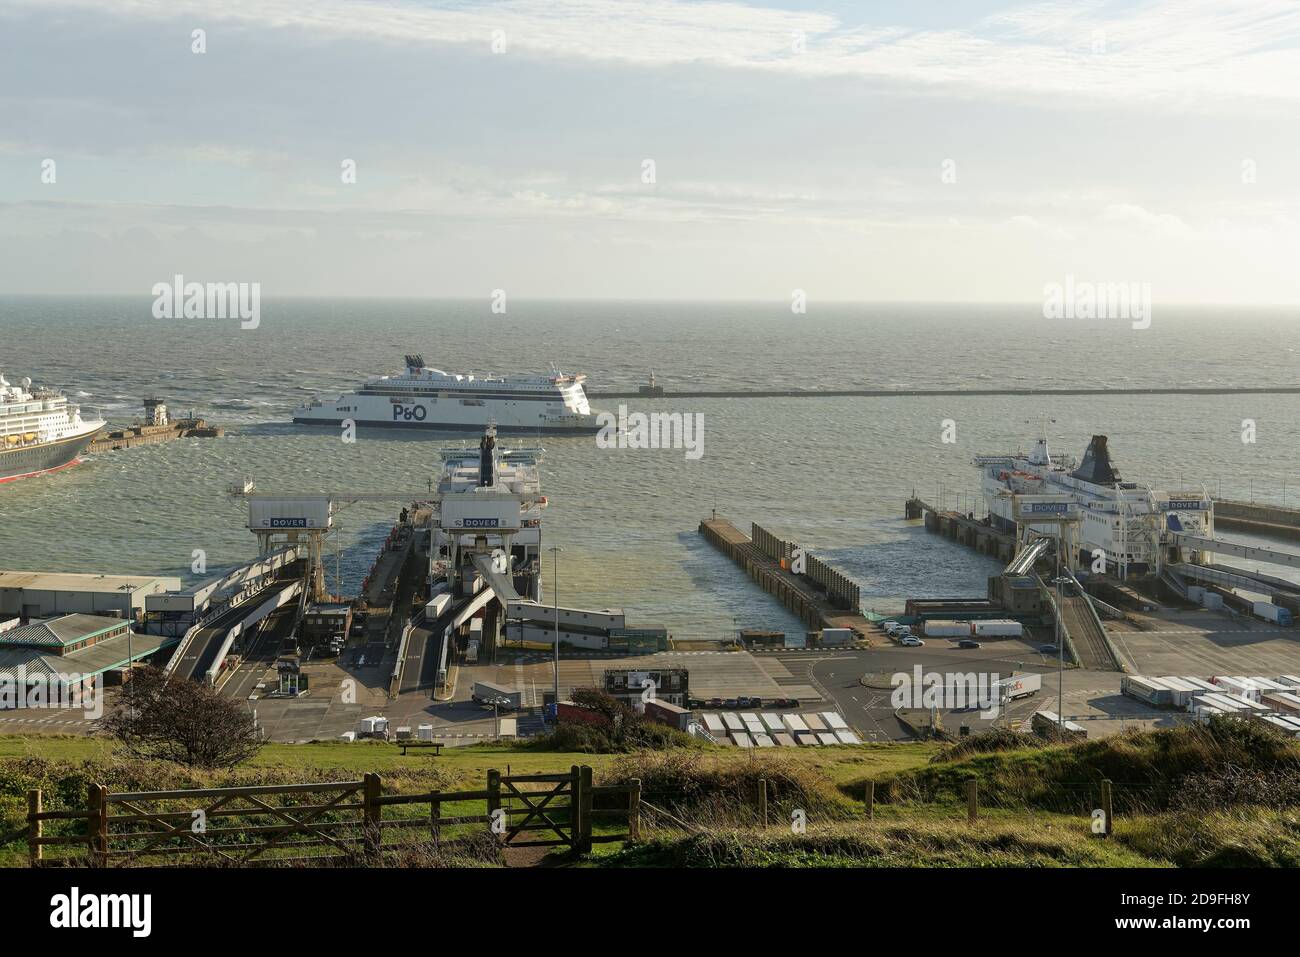 Le port international très fréquenté de Douvres dans le Kent, dans le sud de l'Angleterre, au Royaume-Uni Banque D'Images